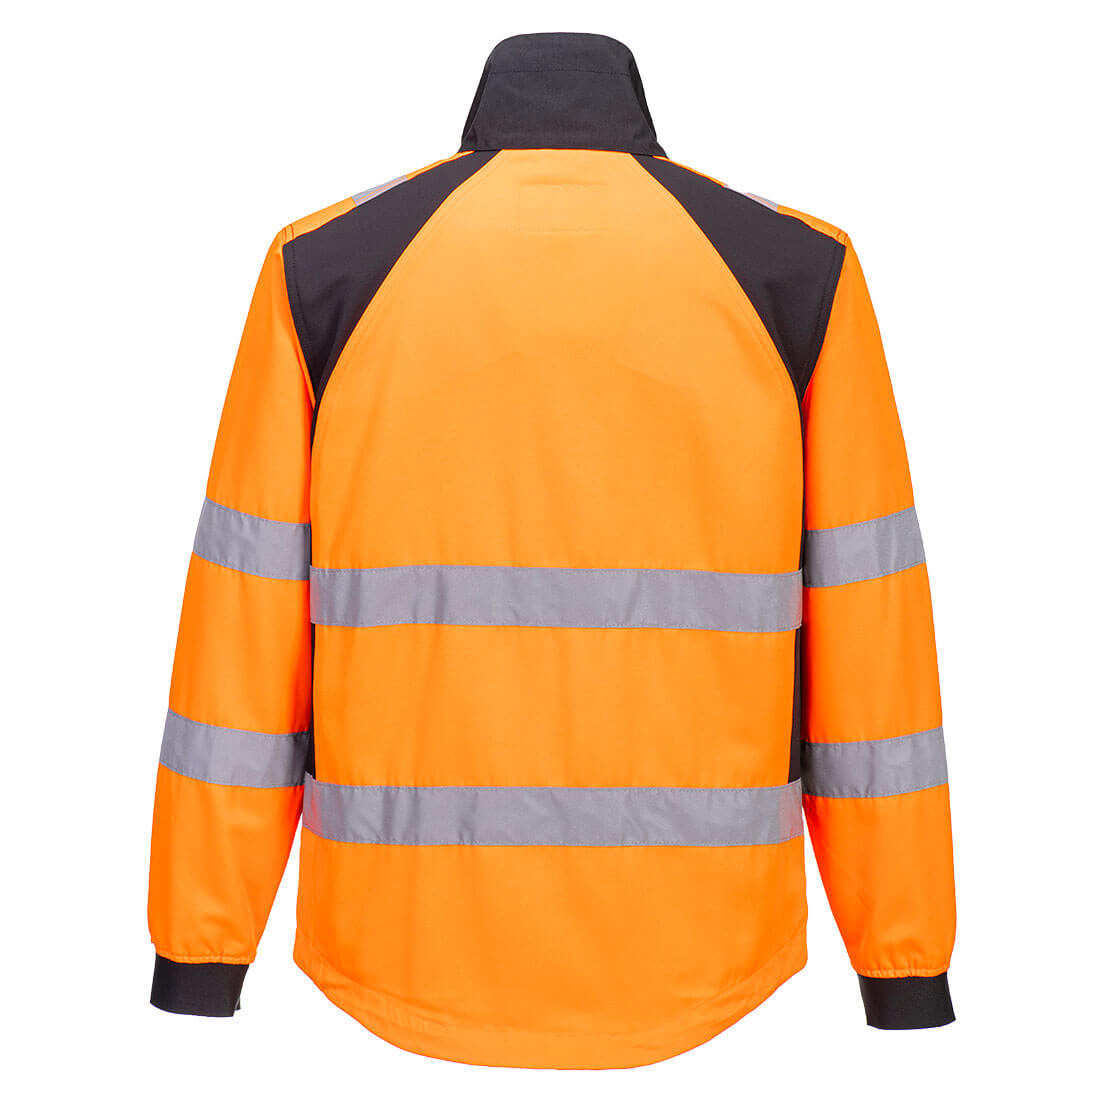 Veste de travail WX2 Eco haute visibilité - Les vêtements de protection